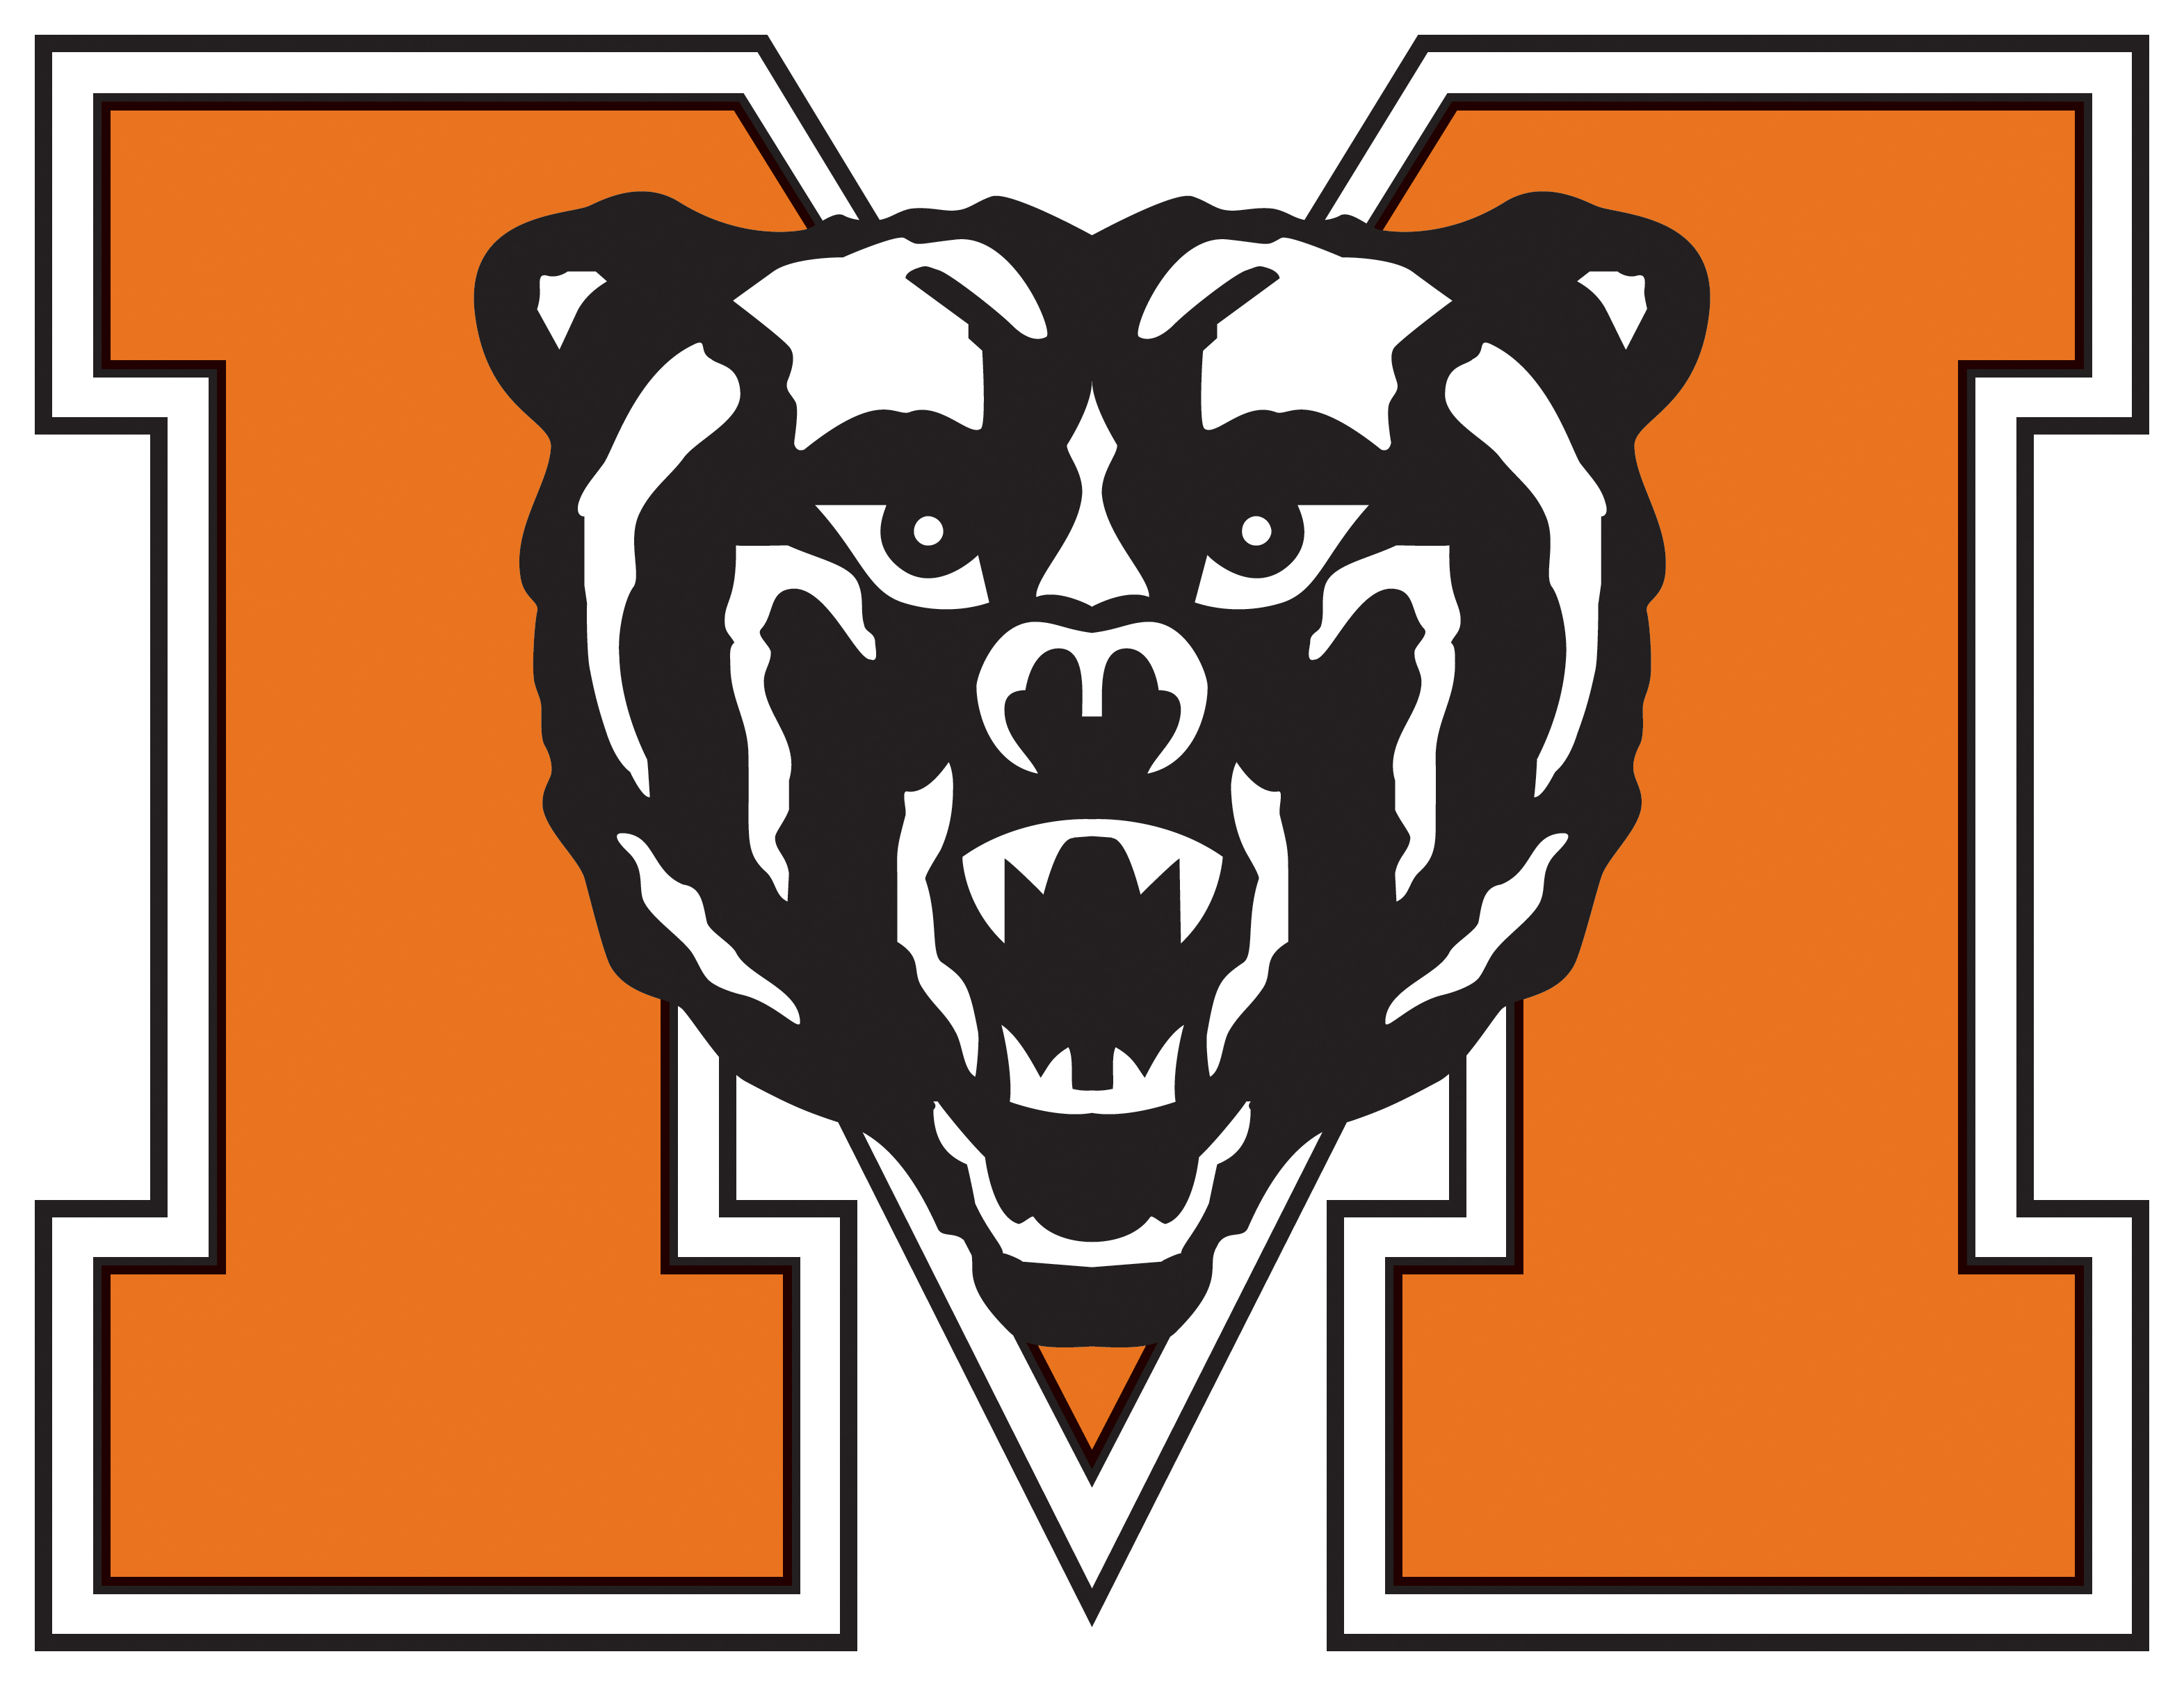 Mercer University Bears